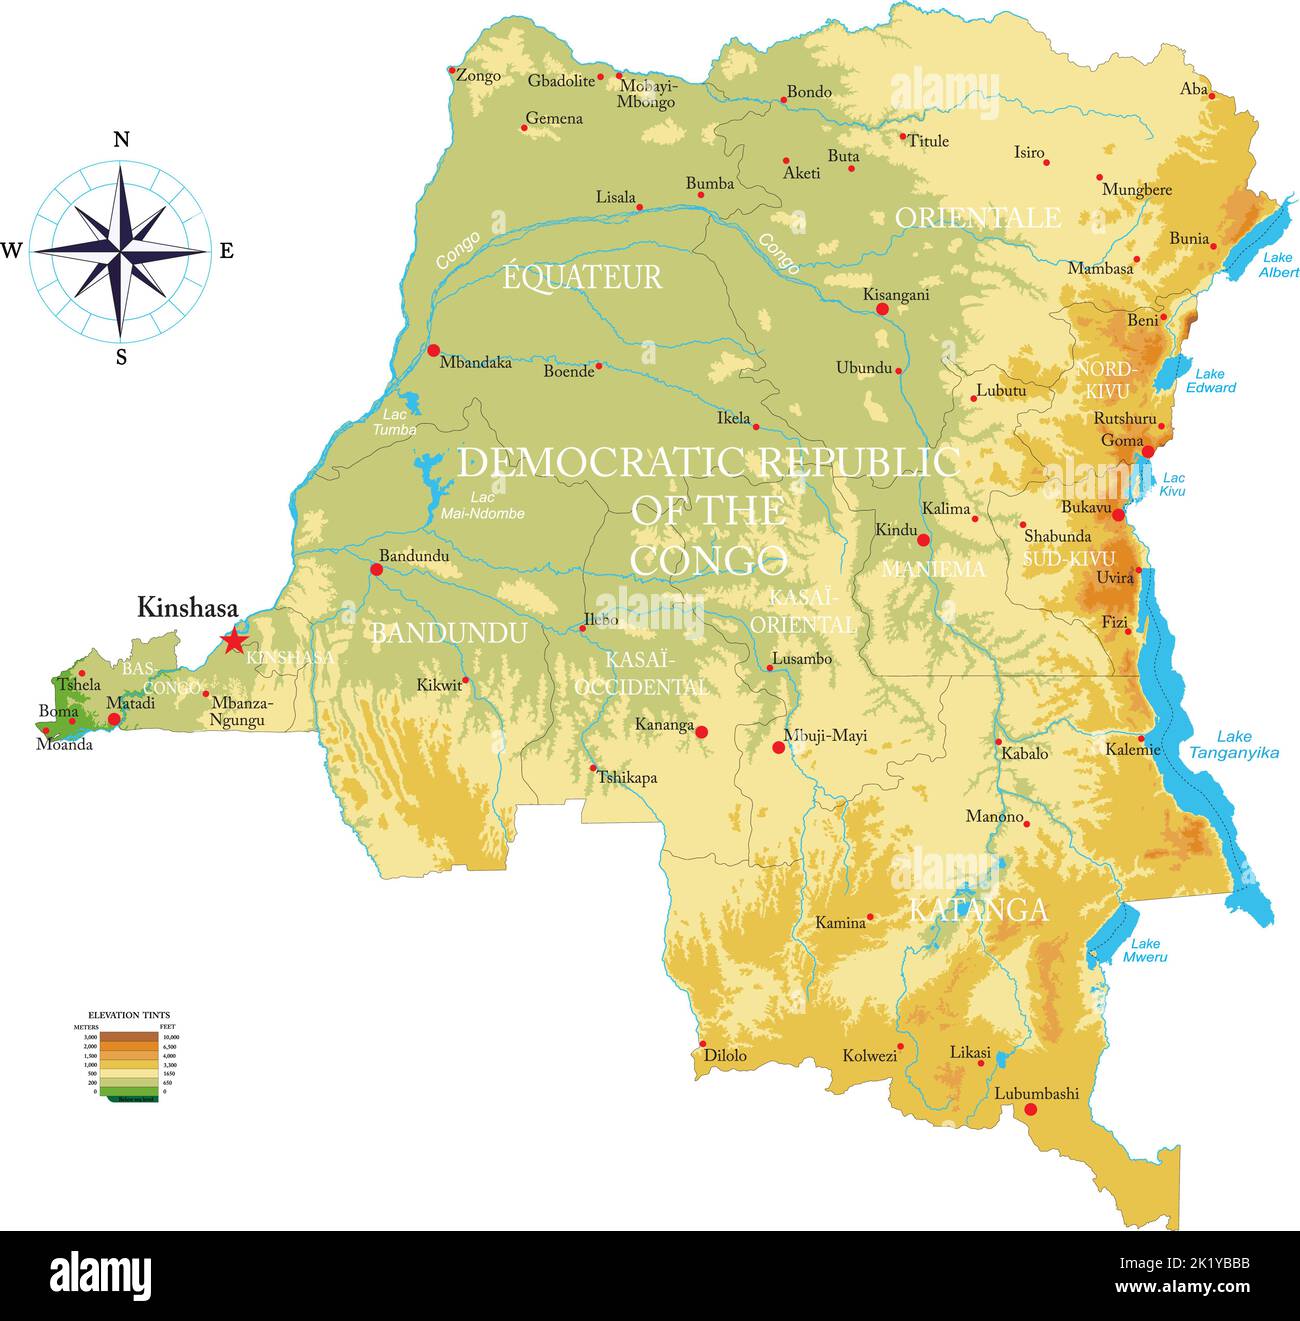 Mappa fisica estremamente dettagliata del D.R. Congo in formato vettoriale, con tutte le forme di soccorso, regioni e grandi città. Illustrazione Vettoriale